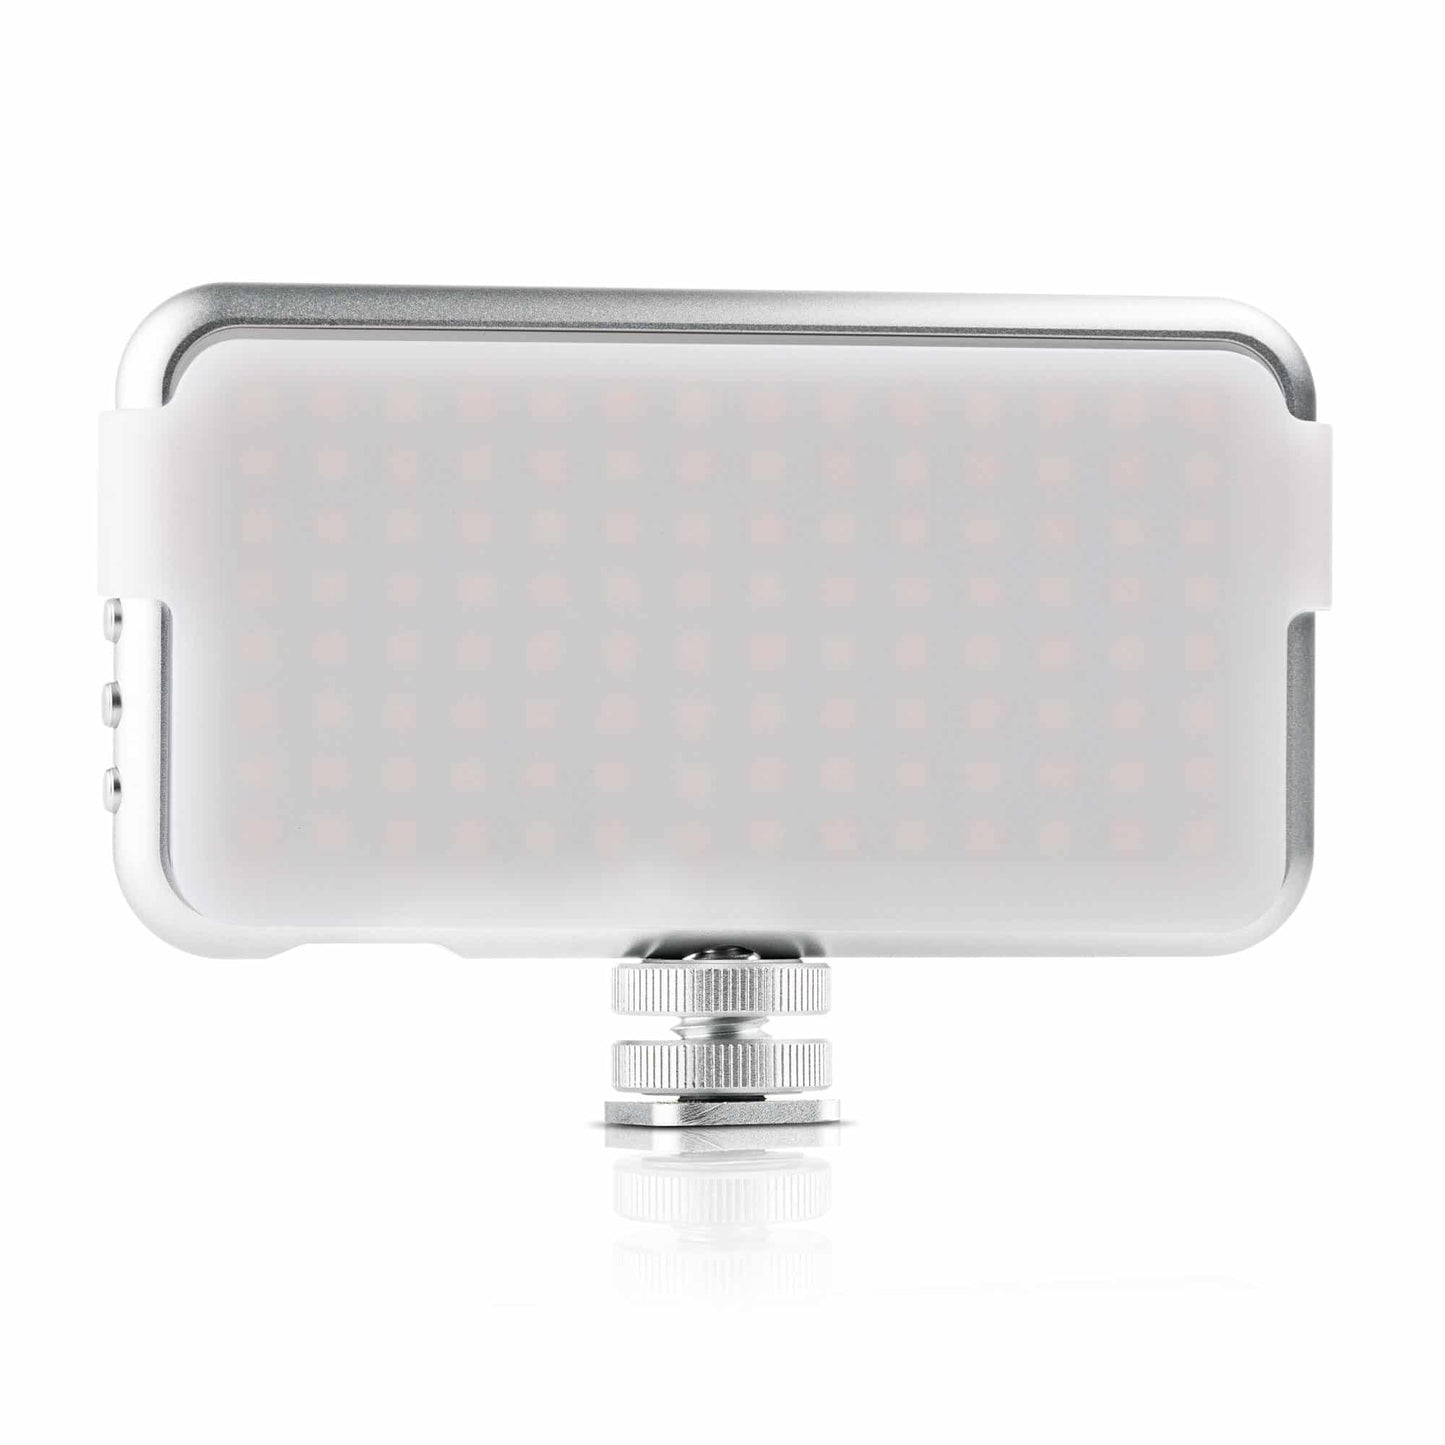 MOJOGEAR Video KIT: Mini tripod + phone holder + microphone + light